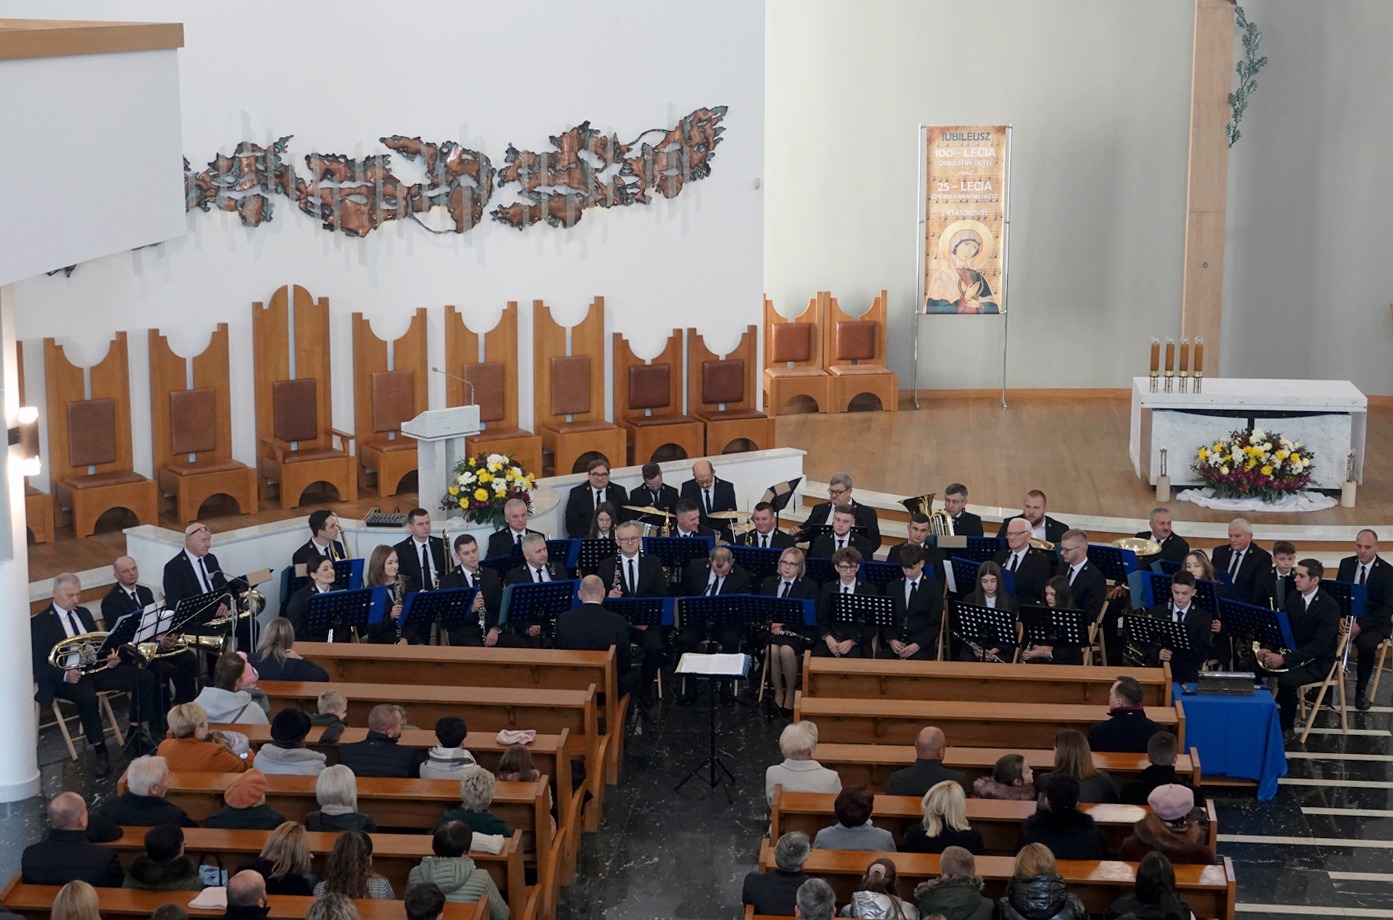 Orkiestra Dęta Towarzystwa Przyjaciół Muzyki w Ptaszkowej, Chór Mieszany w Ptaszkowej